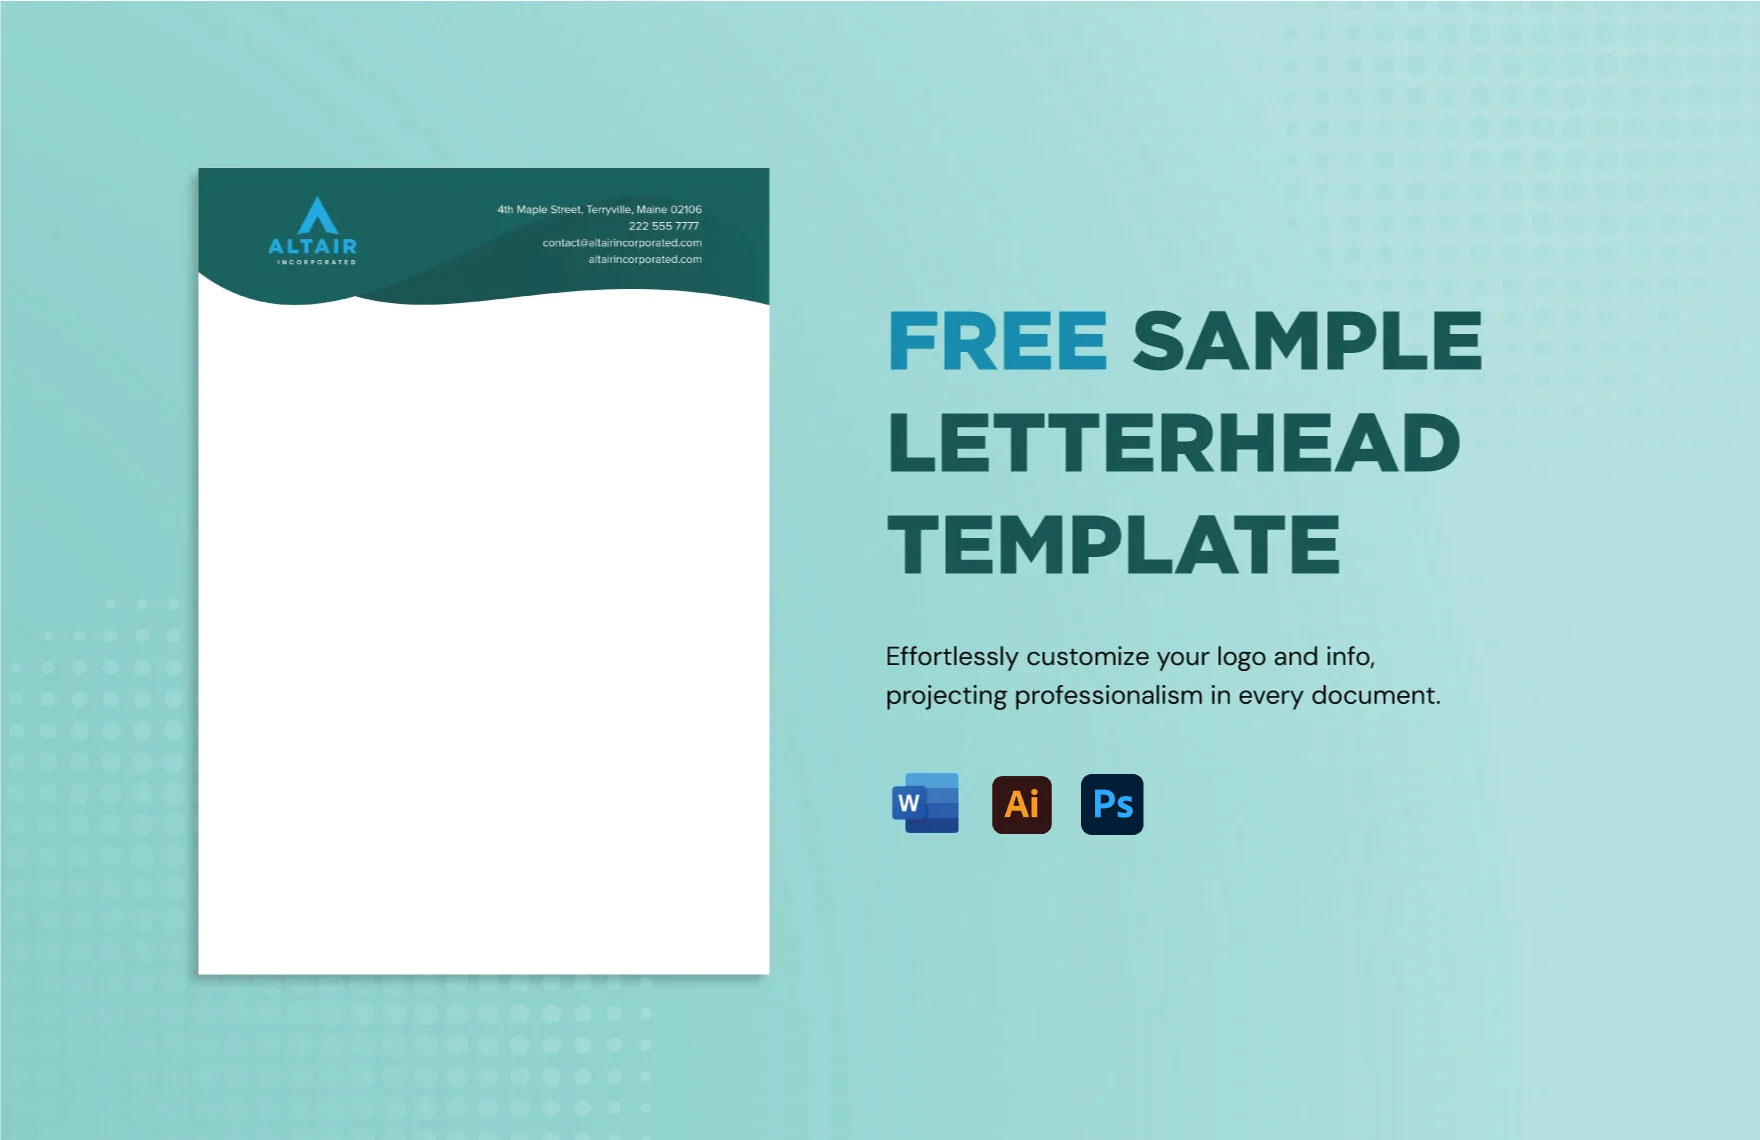 Free Sample Letterhead Template